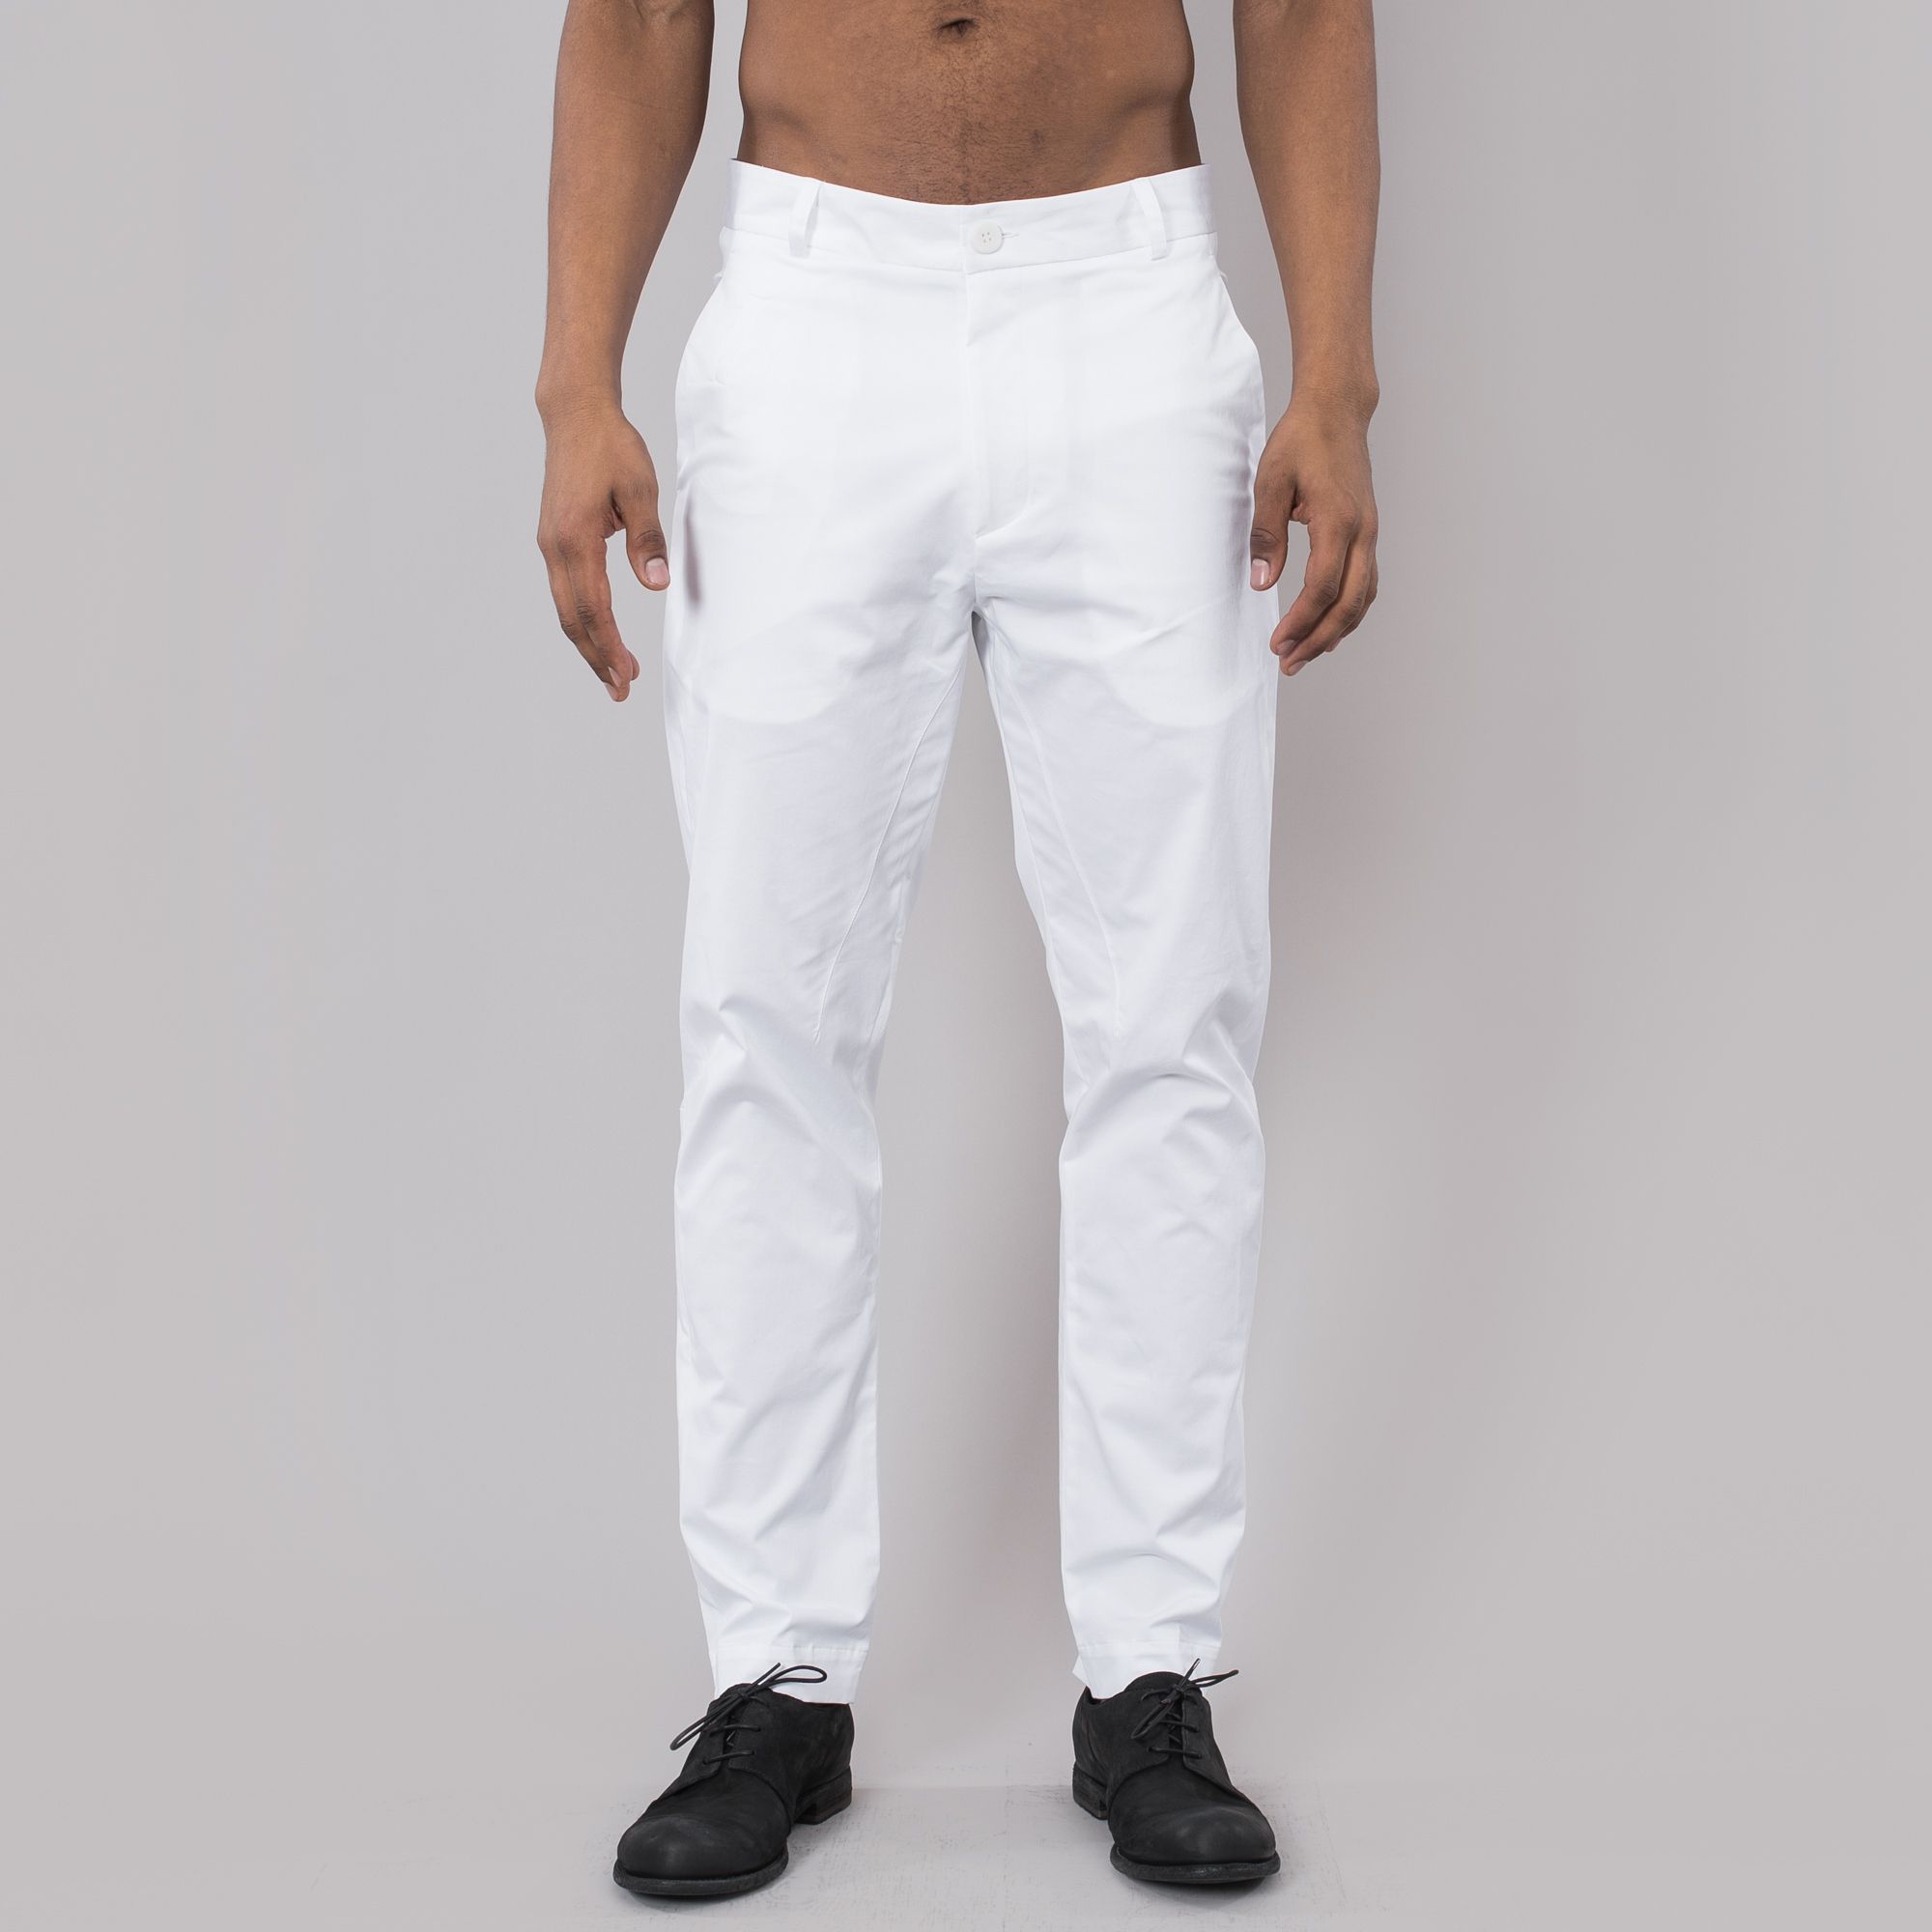 White Cotton Pants | He Spoke Style